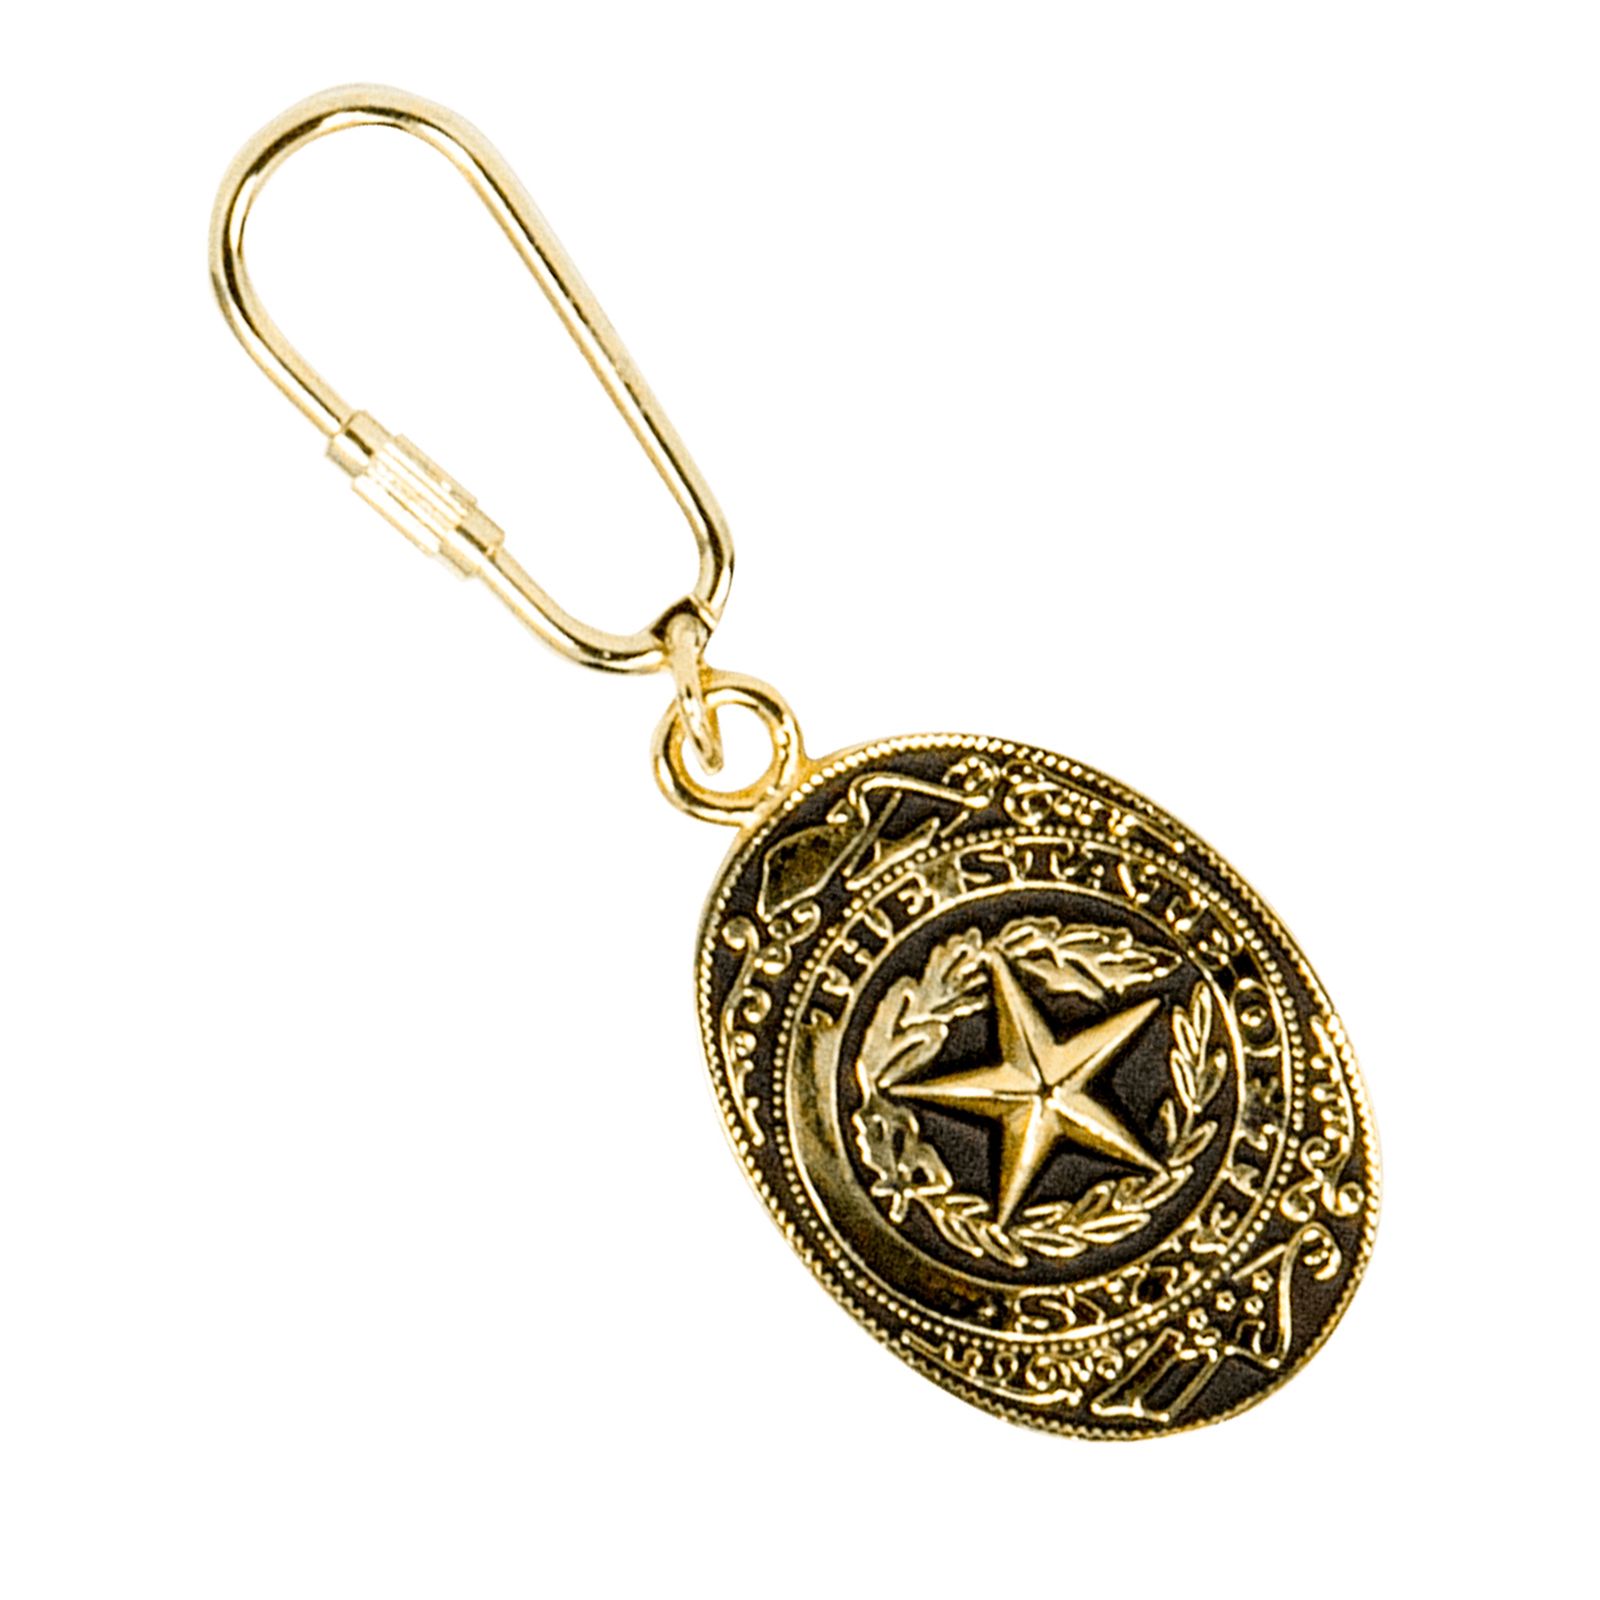 TEXAS w Semi precious Stone Keychain Bracelets – The Spotted Phoenix